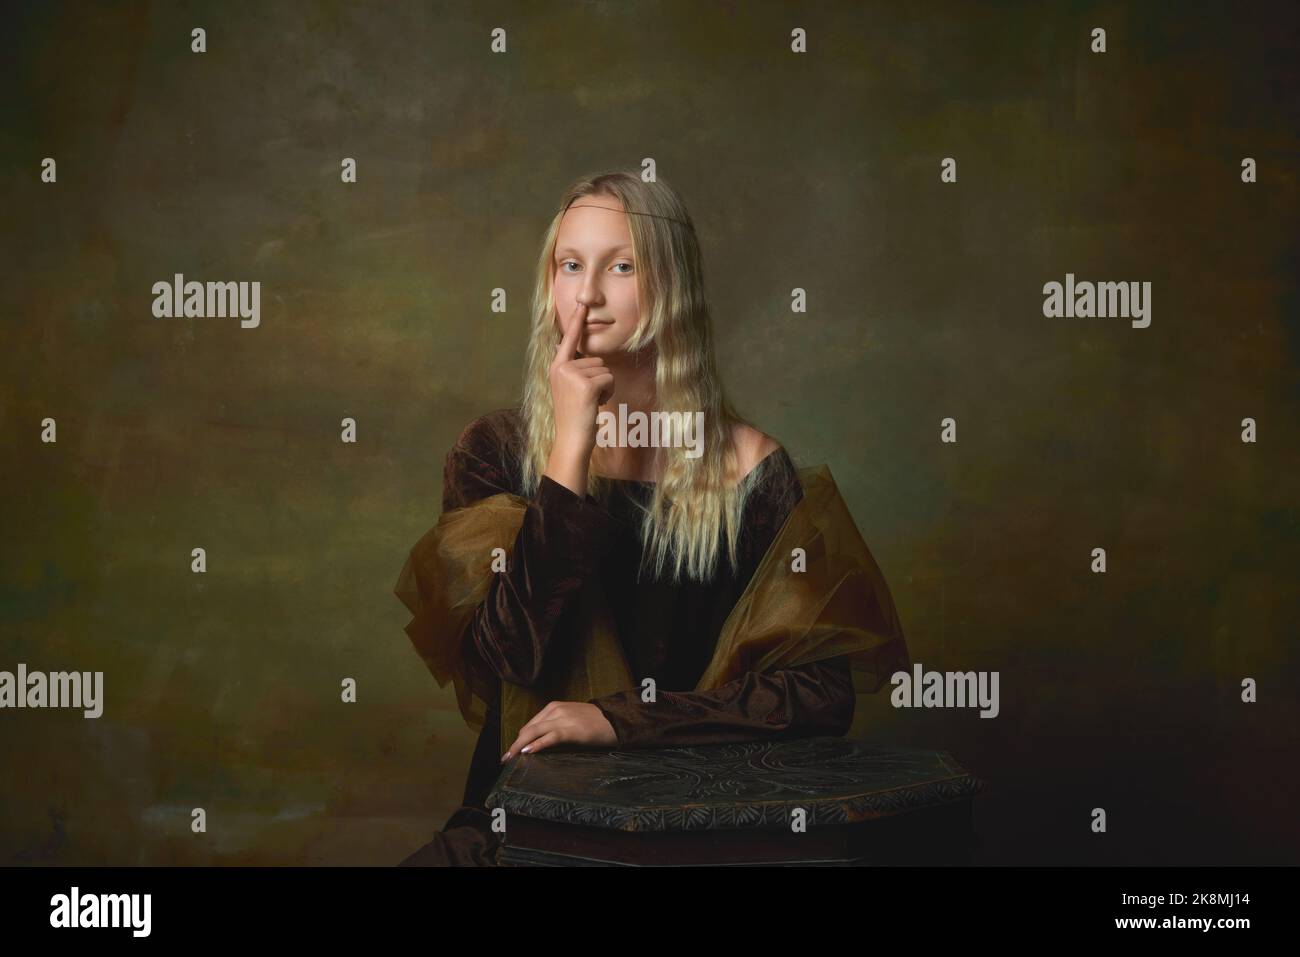 Schlechte Habits. Schüchternheit junges Mädchen als Mona Lisa Bild posiert über dunklen vintage Hintergrund. Retro-Stil, Kunst, Mode, Vergleich von Epochen Konzept. Stockfoto